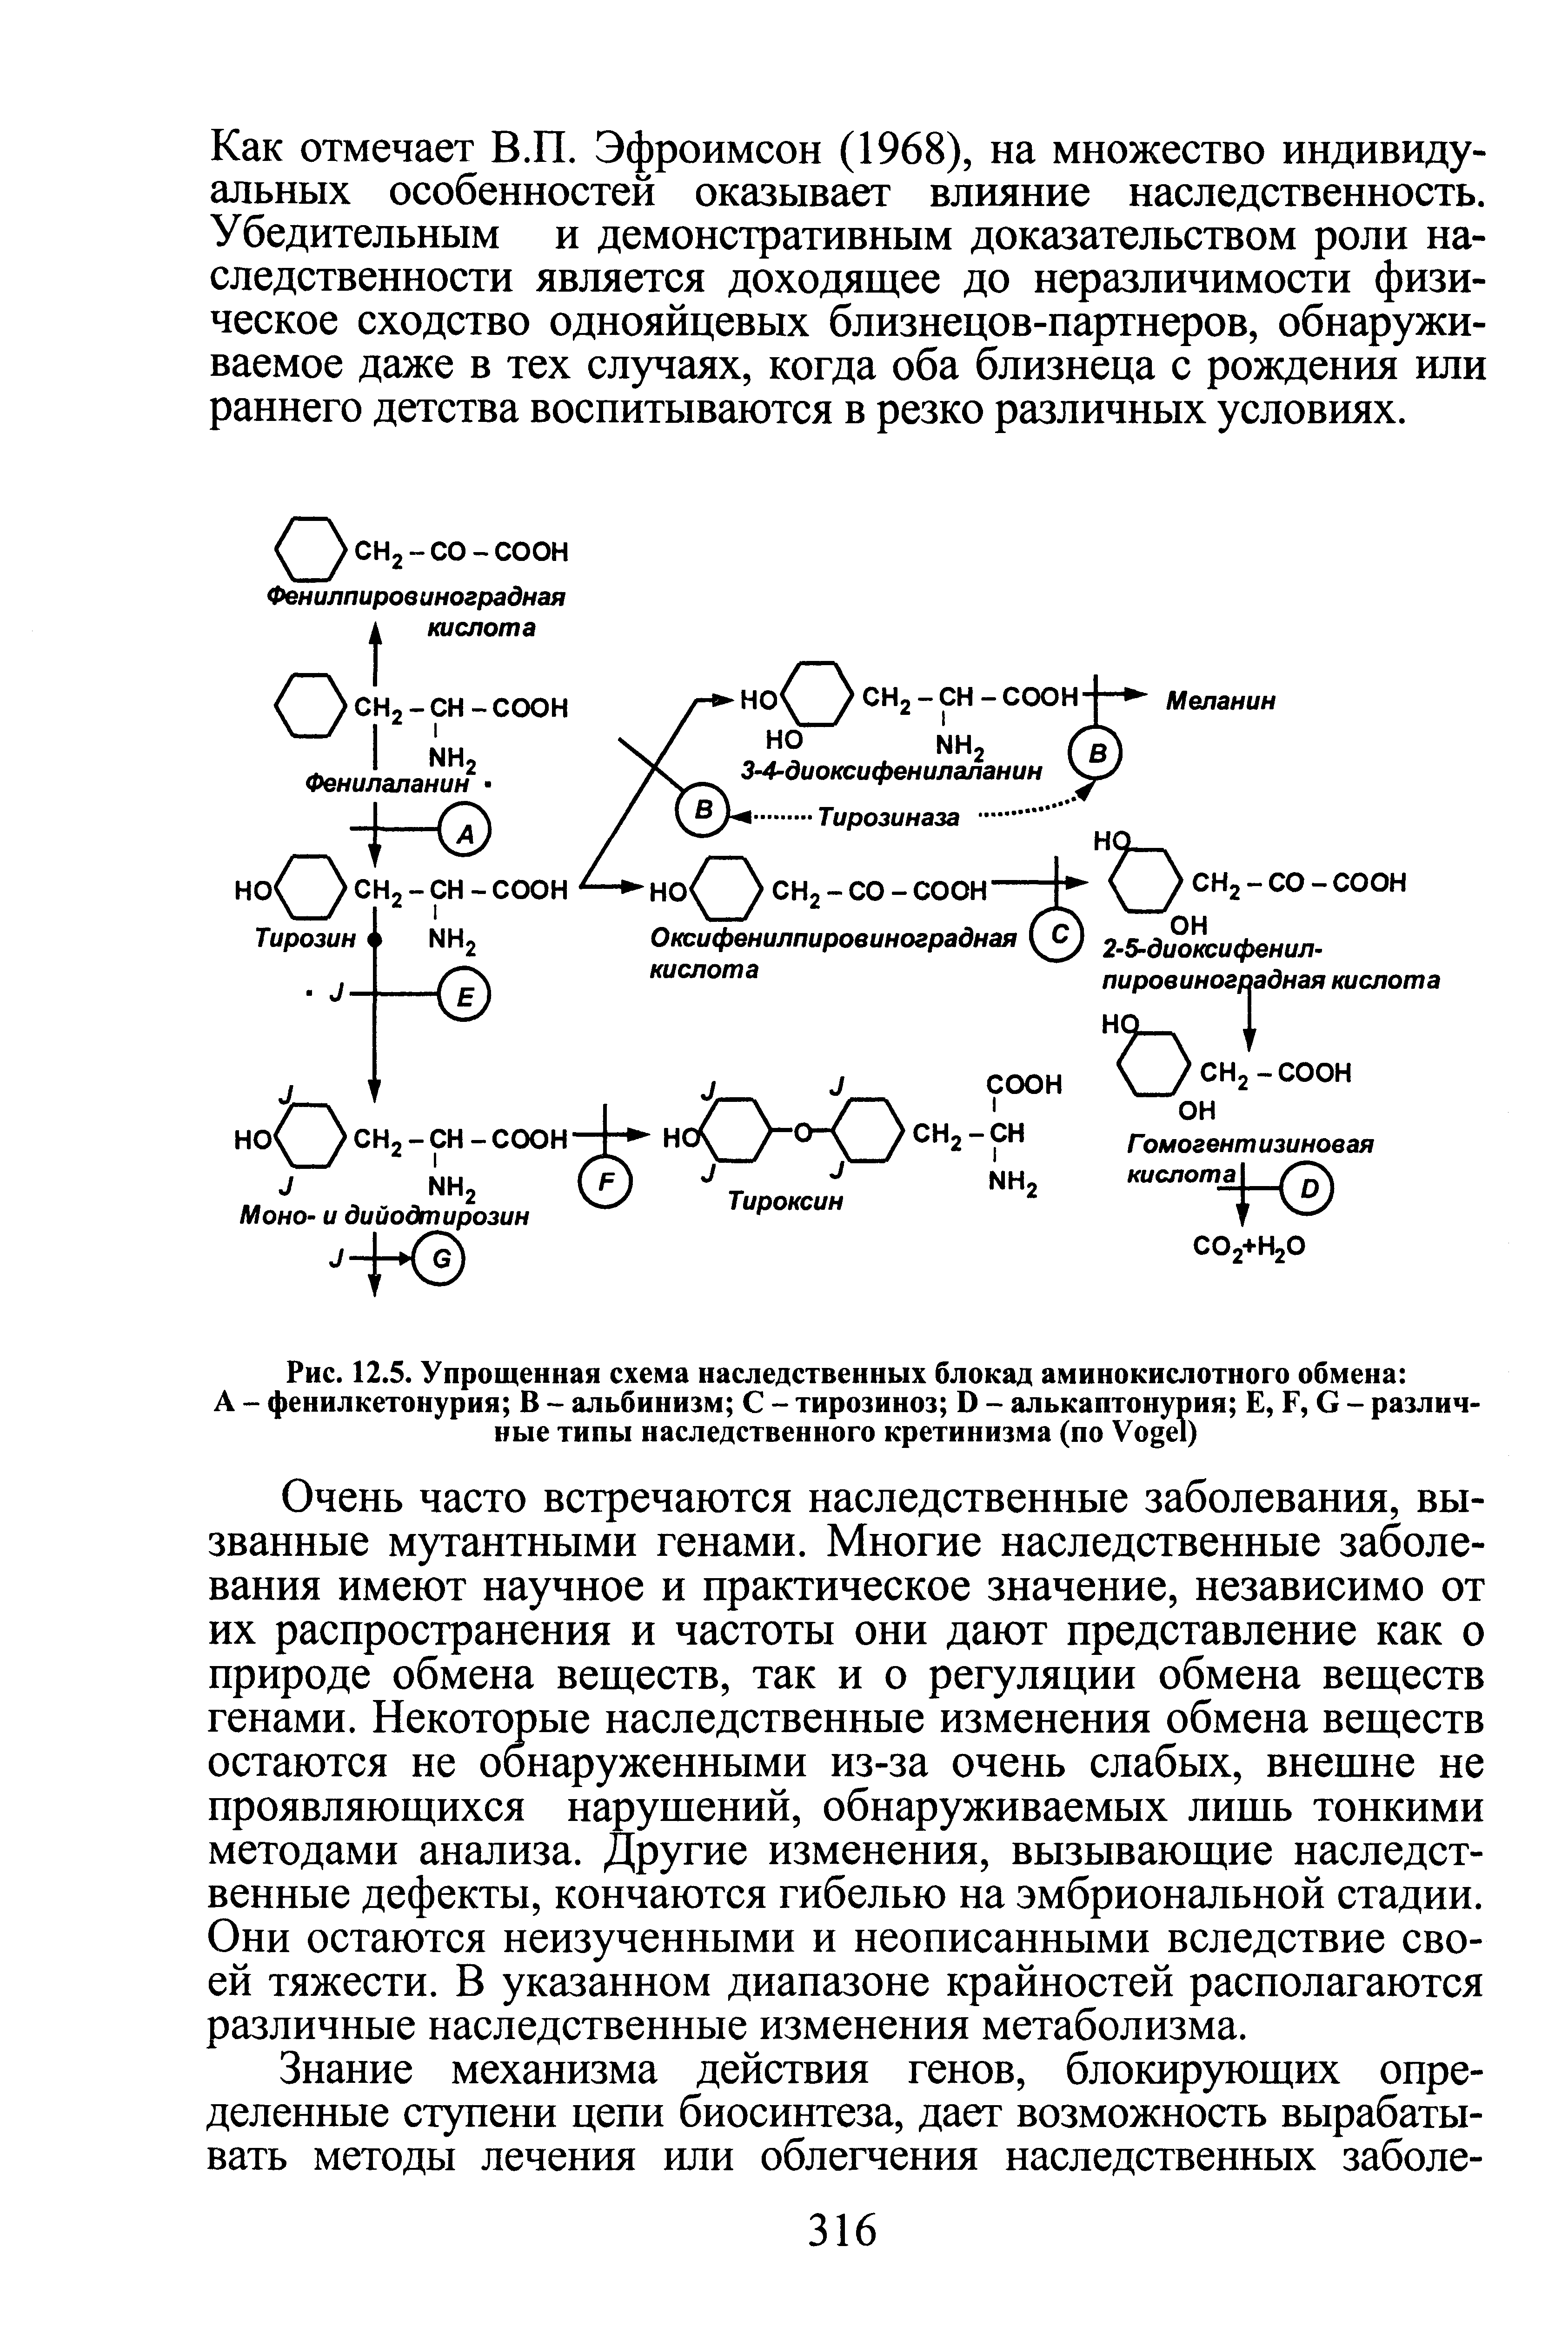 Рис. 12.5. Упрощенная схема наследственных блокад аминокислотного обмена А - фенилкетонурия В - альбинизм С - тирозиноз D - алькаптонурия Е, F, G - различные типы наследственного кретинизма (по V )...